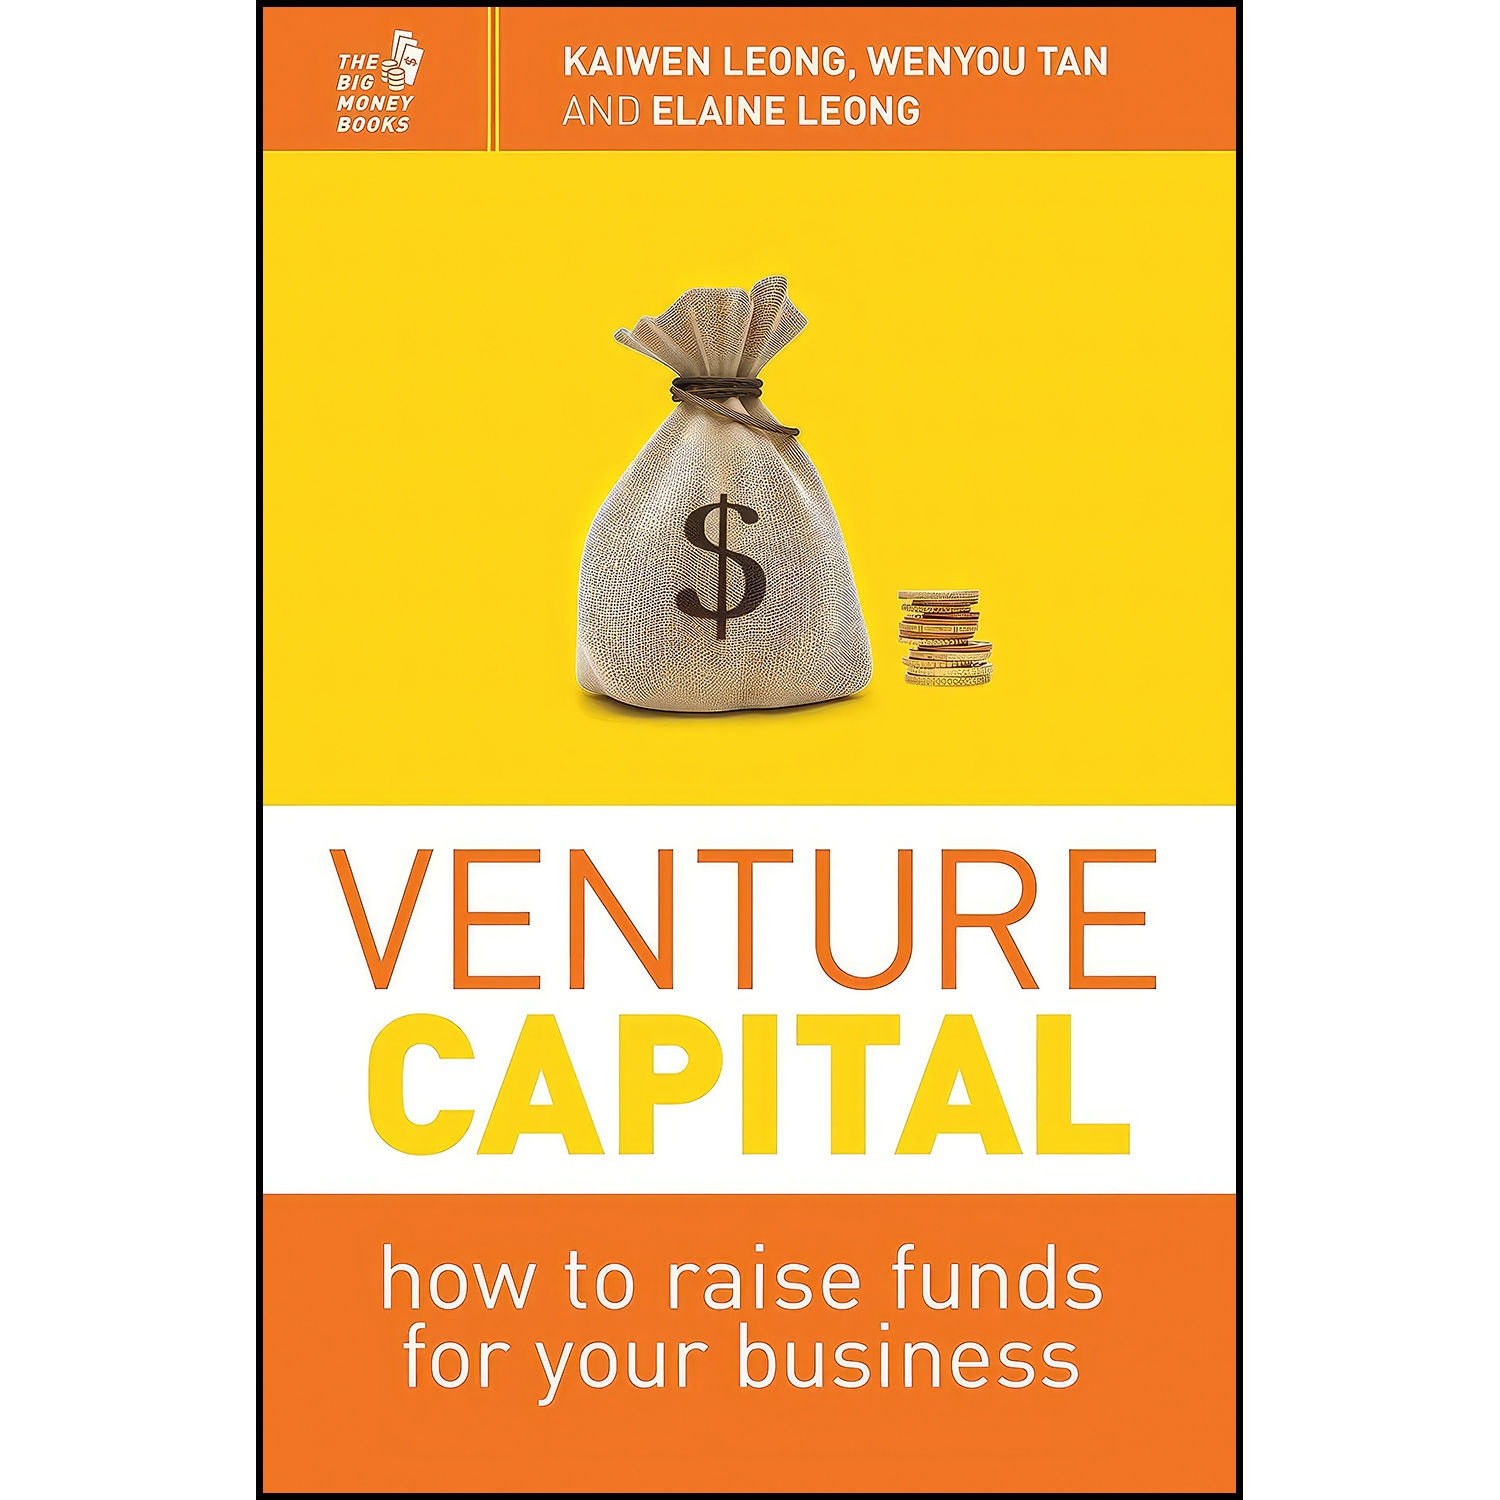 کتاب Venture Capital اثر جمعي از نويسندگان انتشارات Marshall Cavendish International 